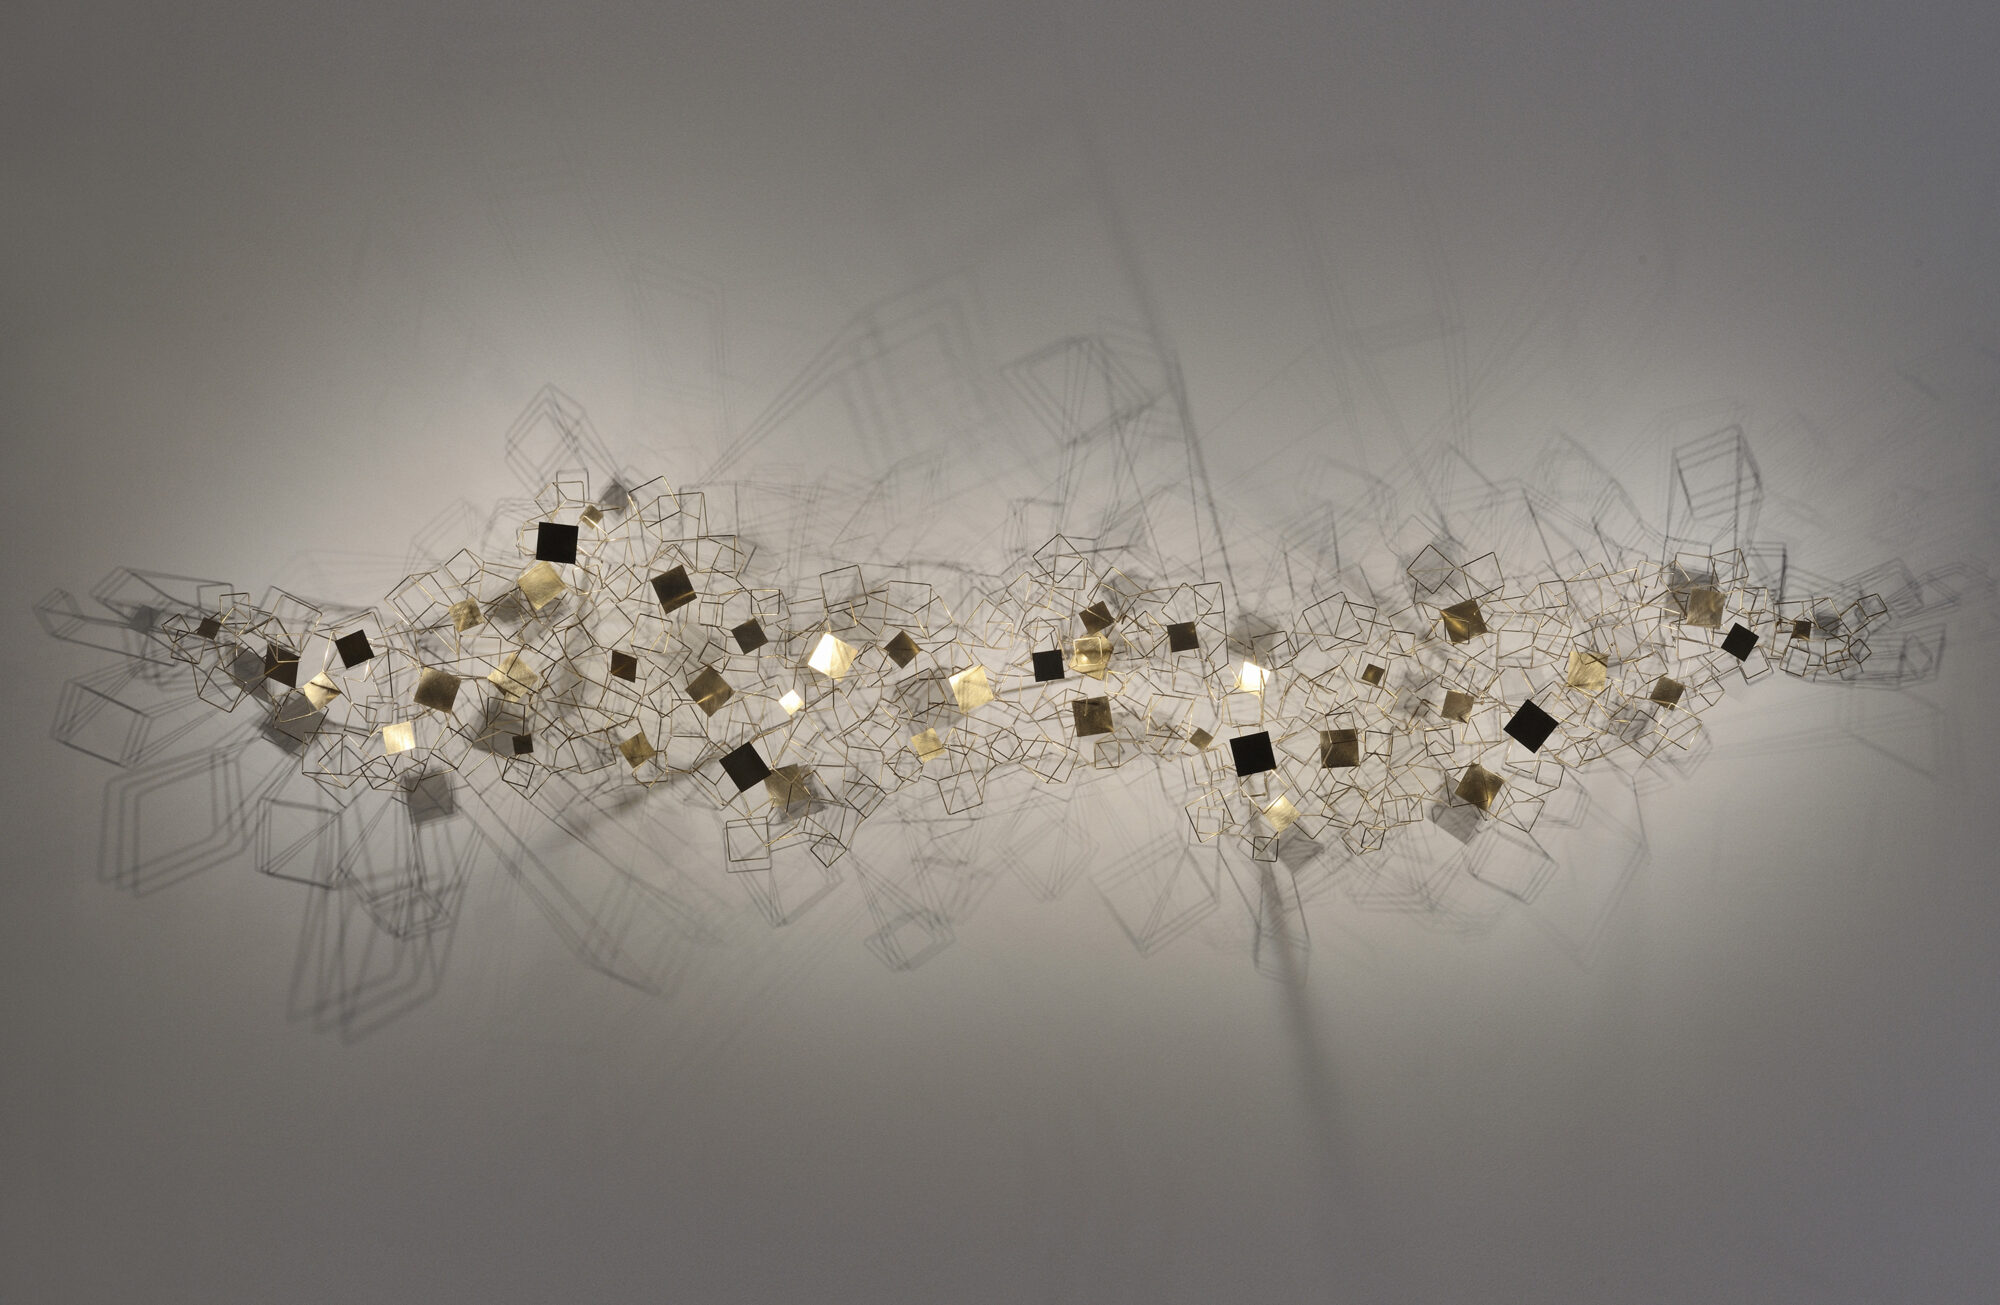 Éric de Dormael: Twenty Light Years - Galerie Negropontes